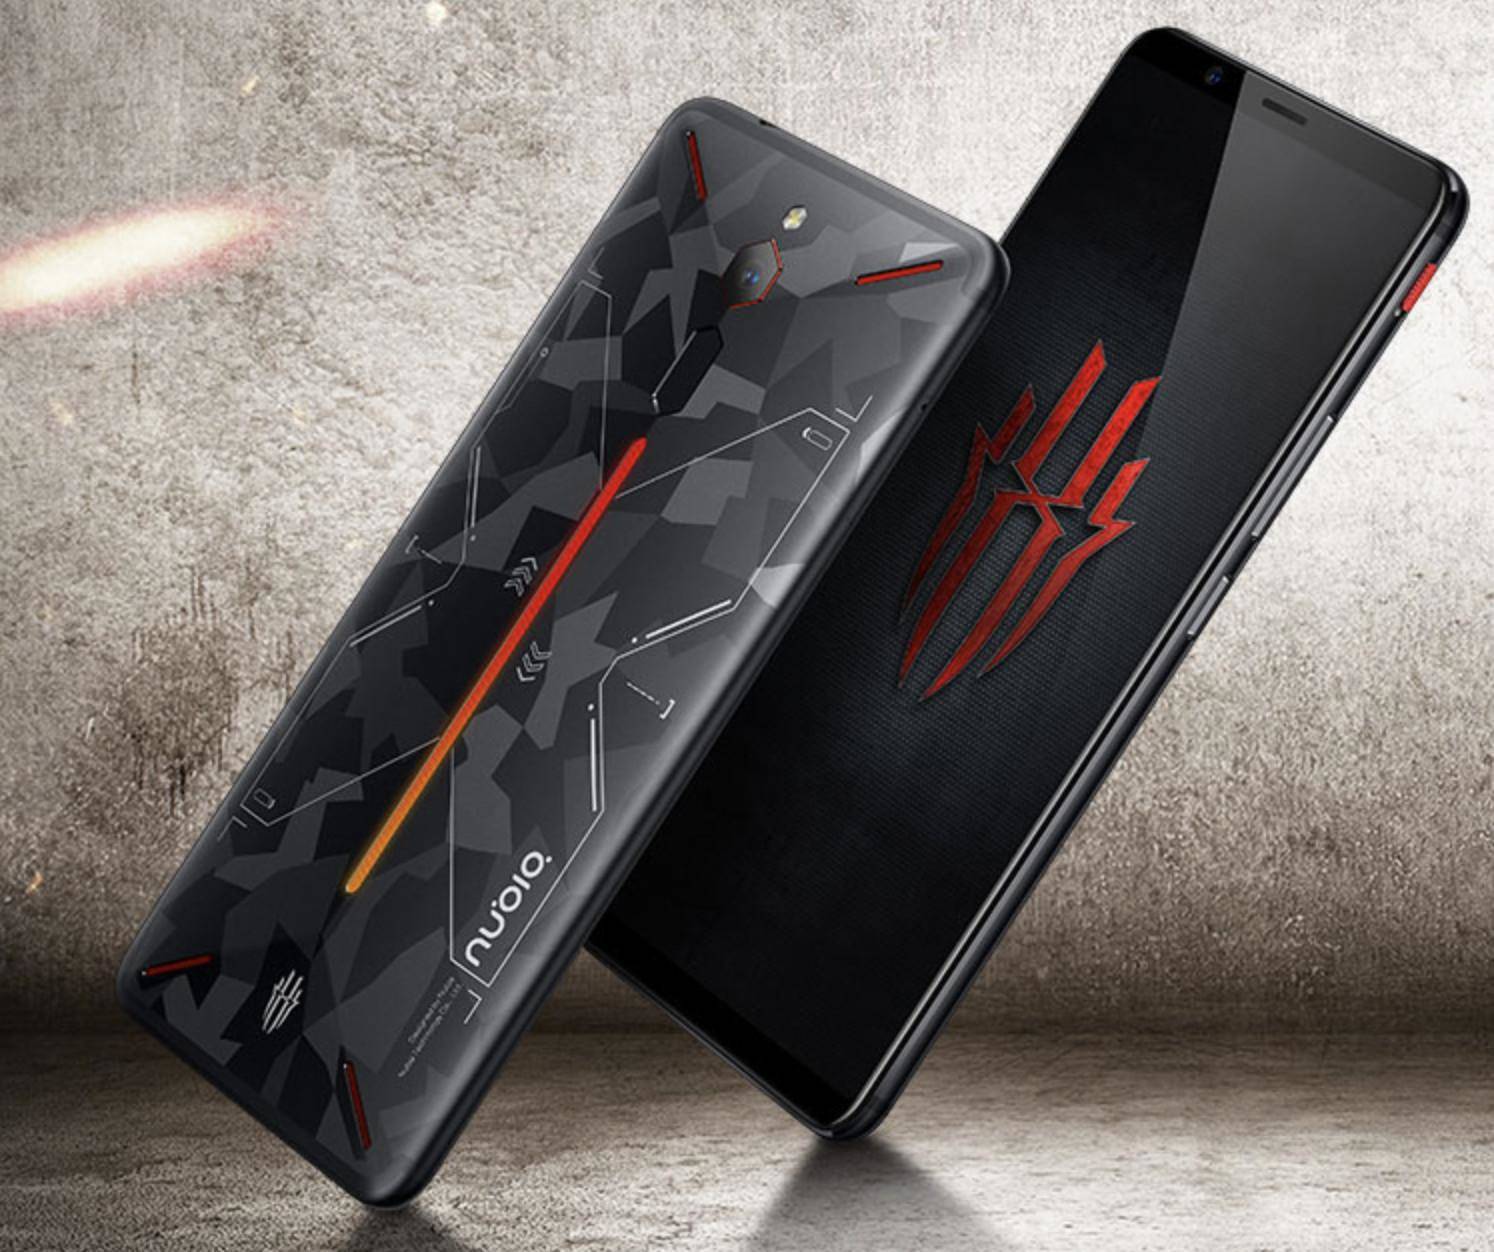 Nubia करेगी भारत में गेमिंग स्मार्टफोन Red Magic 3 लॉन्च